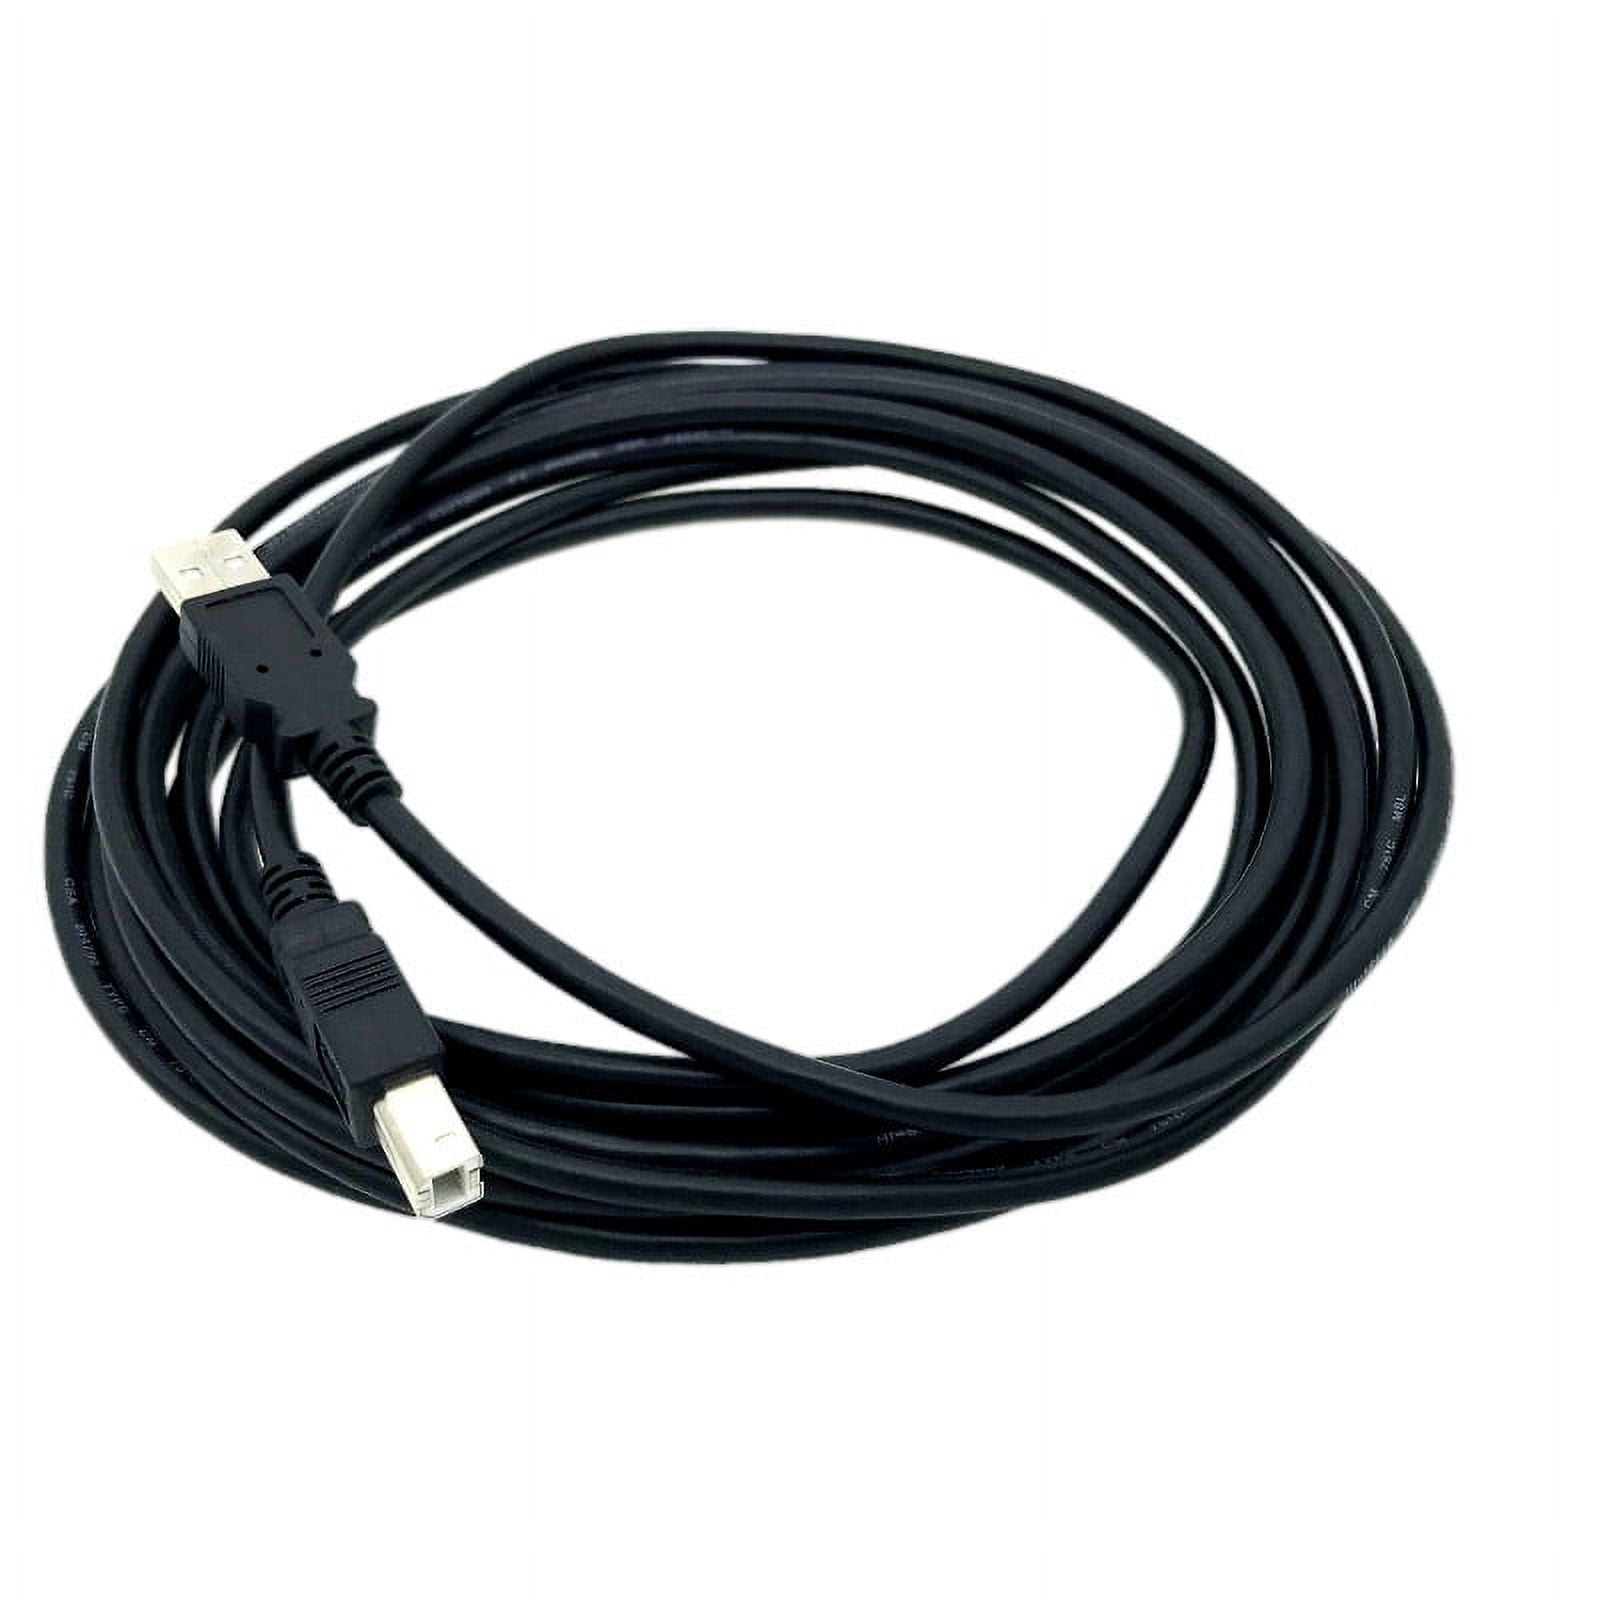 USB Printer Cable Lead For Canon PIXMA MG2550S MG3050 iP2850 MG3650 MG5750  etc